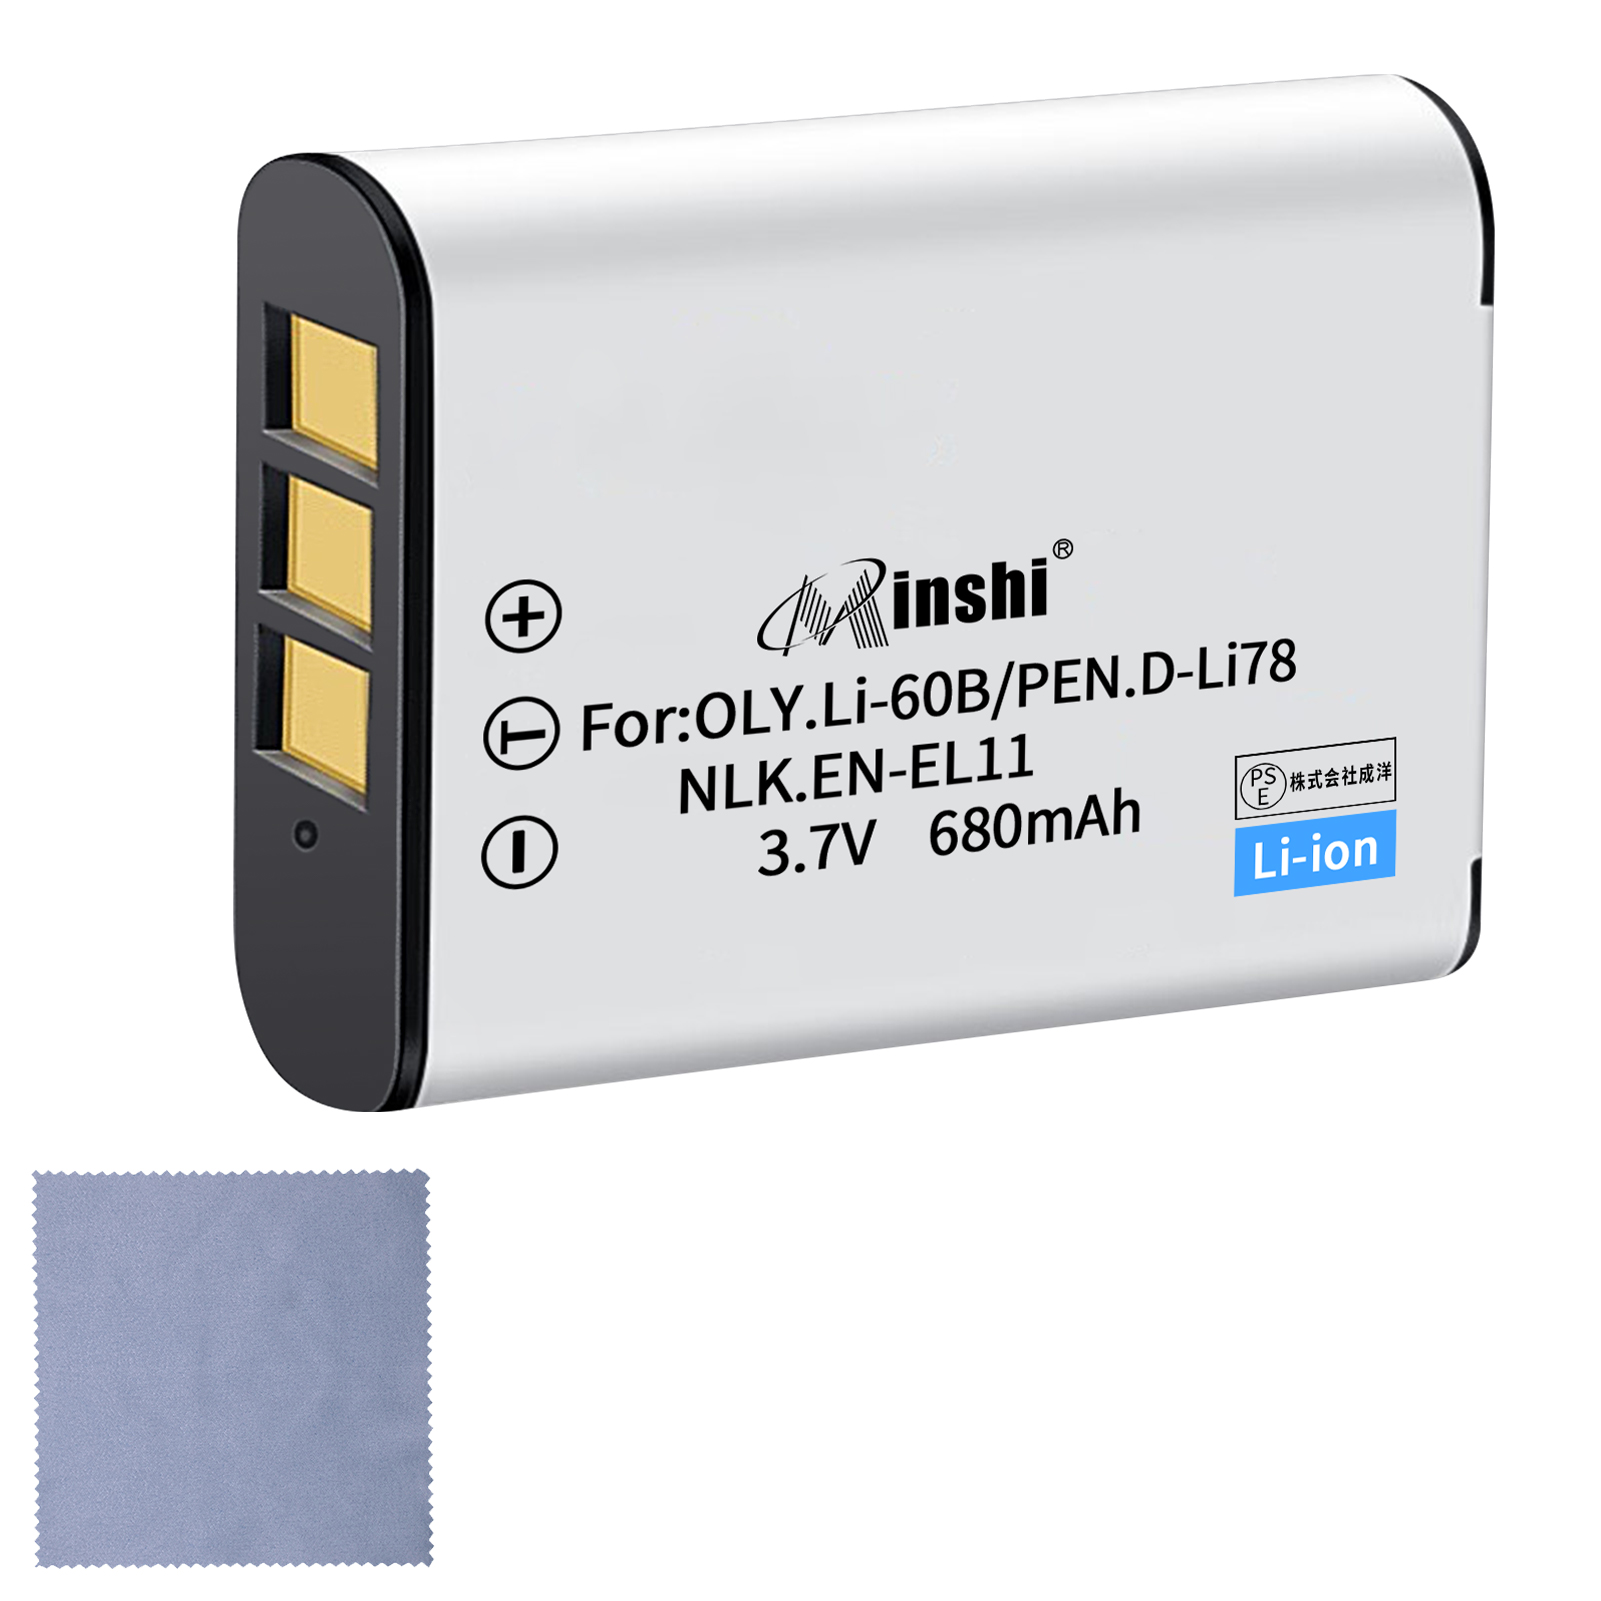 【清潔布ー付】minshi NIKON EN-EL11 【680mAh 3.7V】PSE認定済 高品質EN-EL15 EN-EL15a交換用バッテリー オリジナル充電器との互換性がない